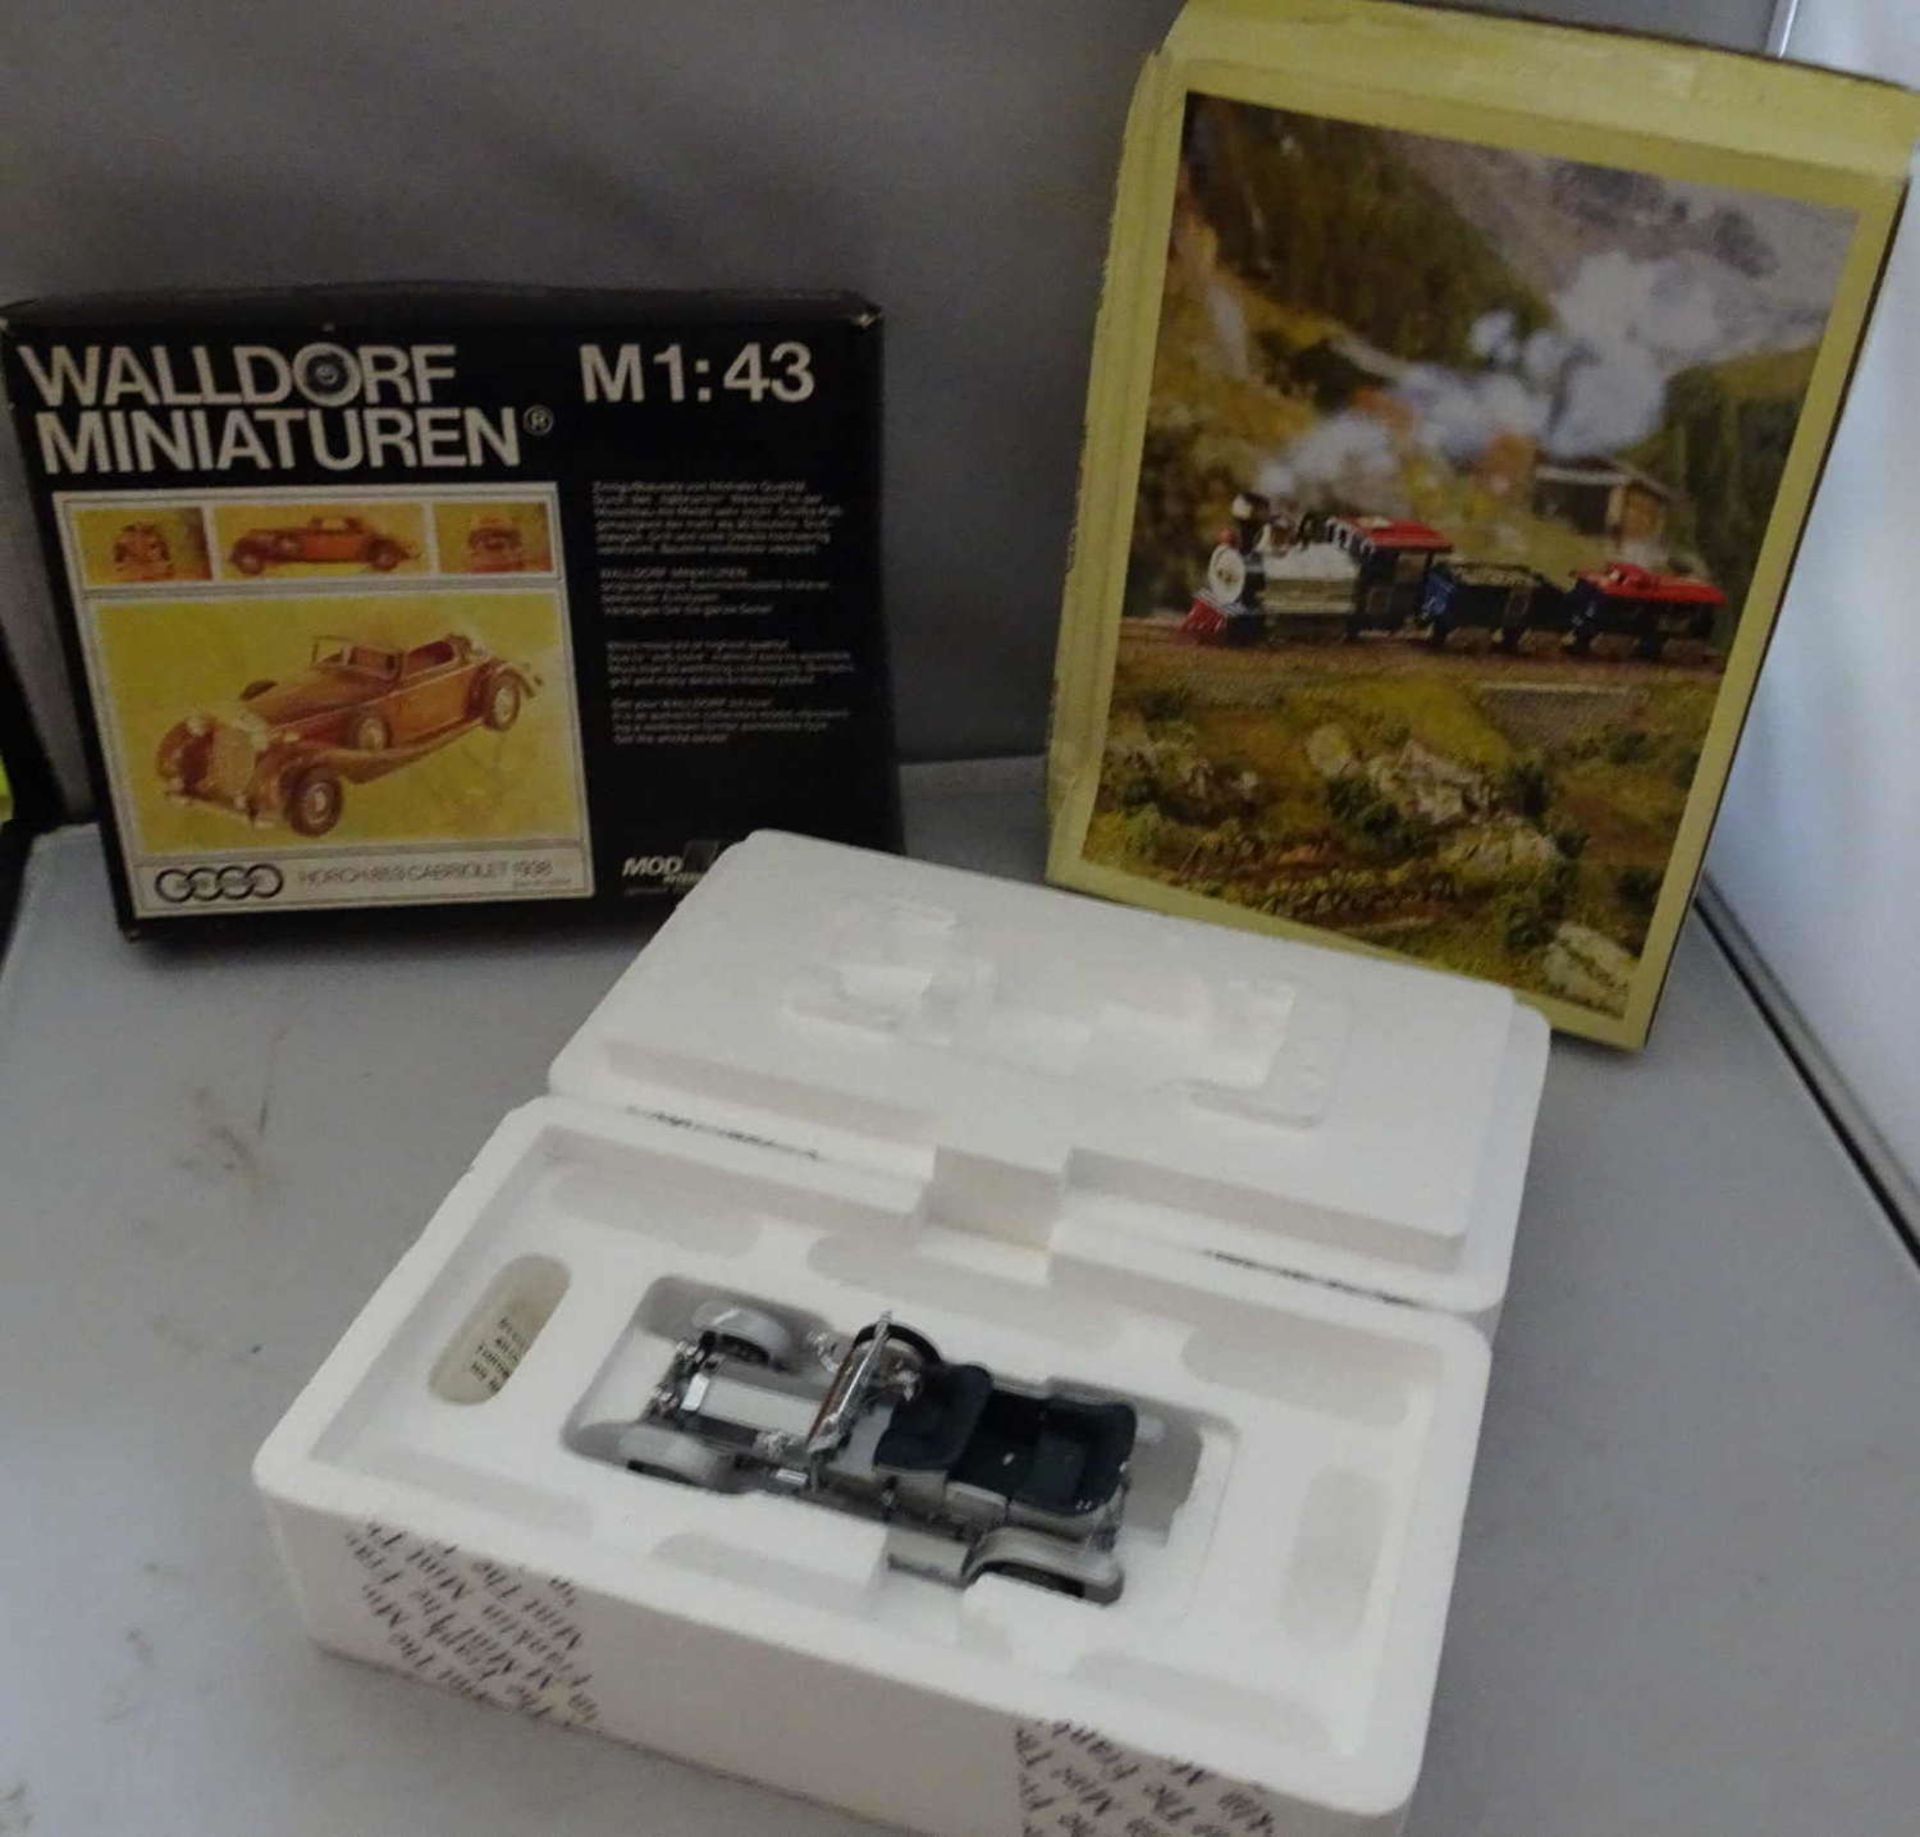 Lot Spielzeugmodelle, dabei Walldorf Miniaturen M 1:43, kleine Eisenbahn mit Schienen, sowie